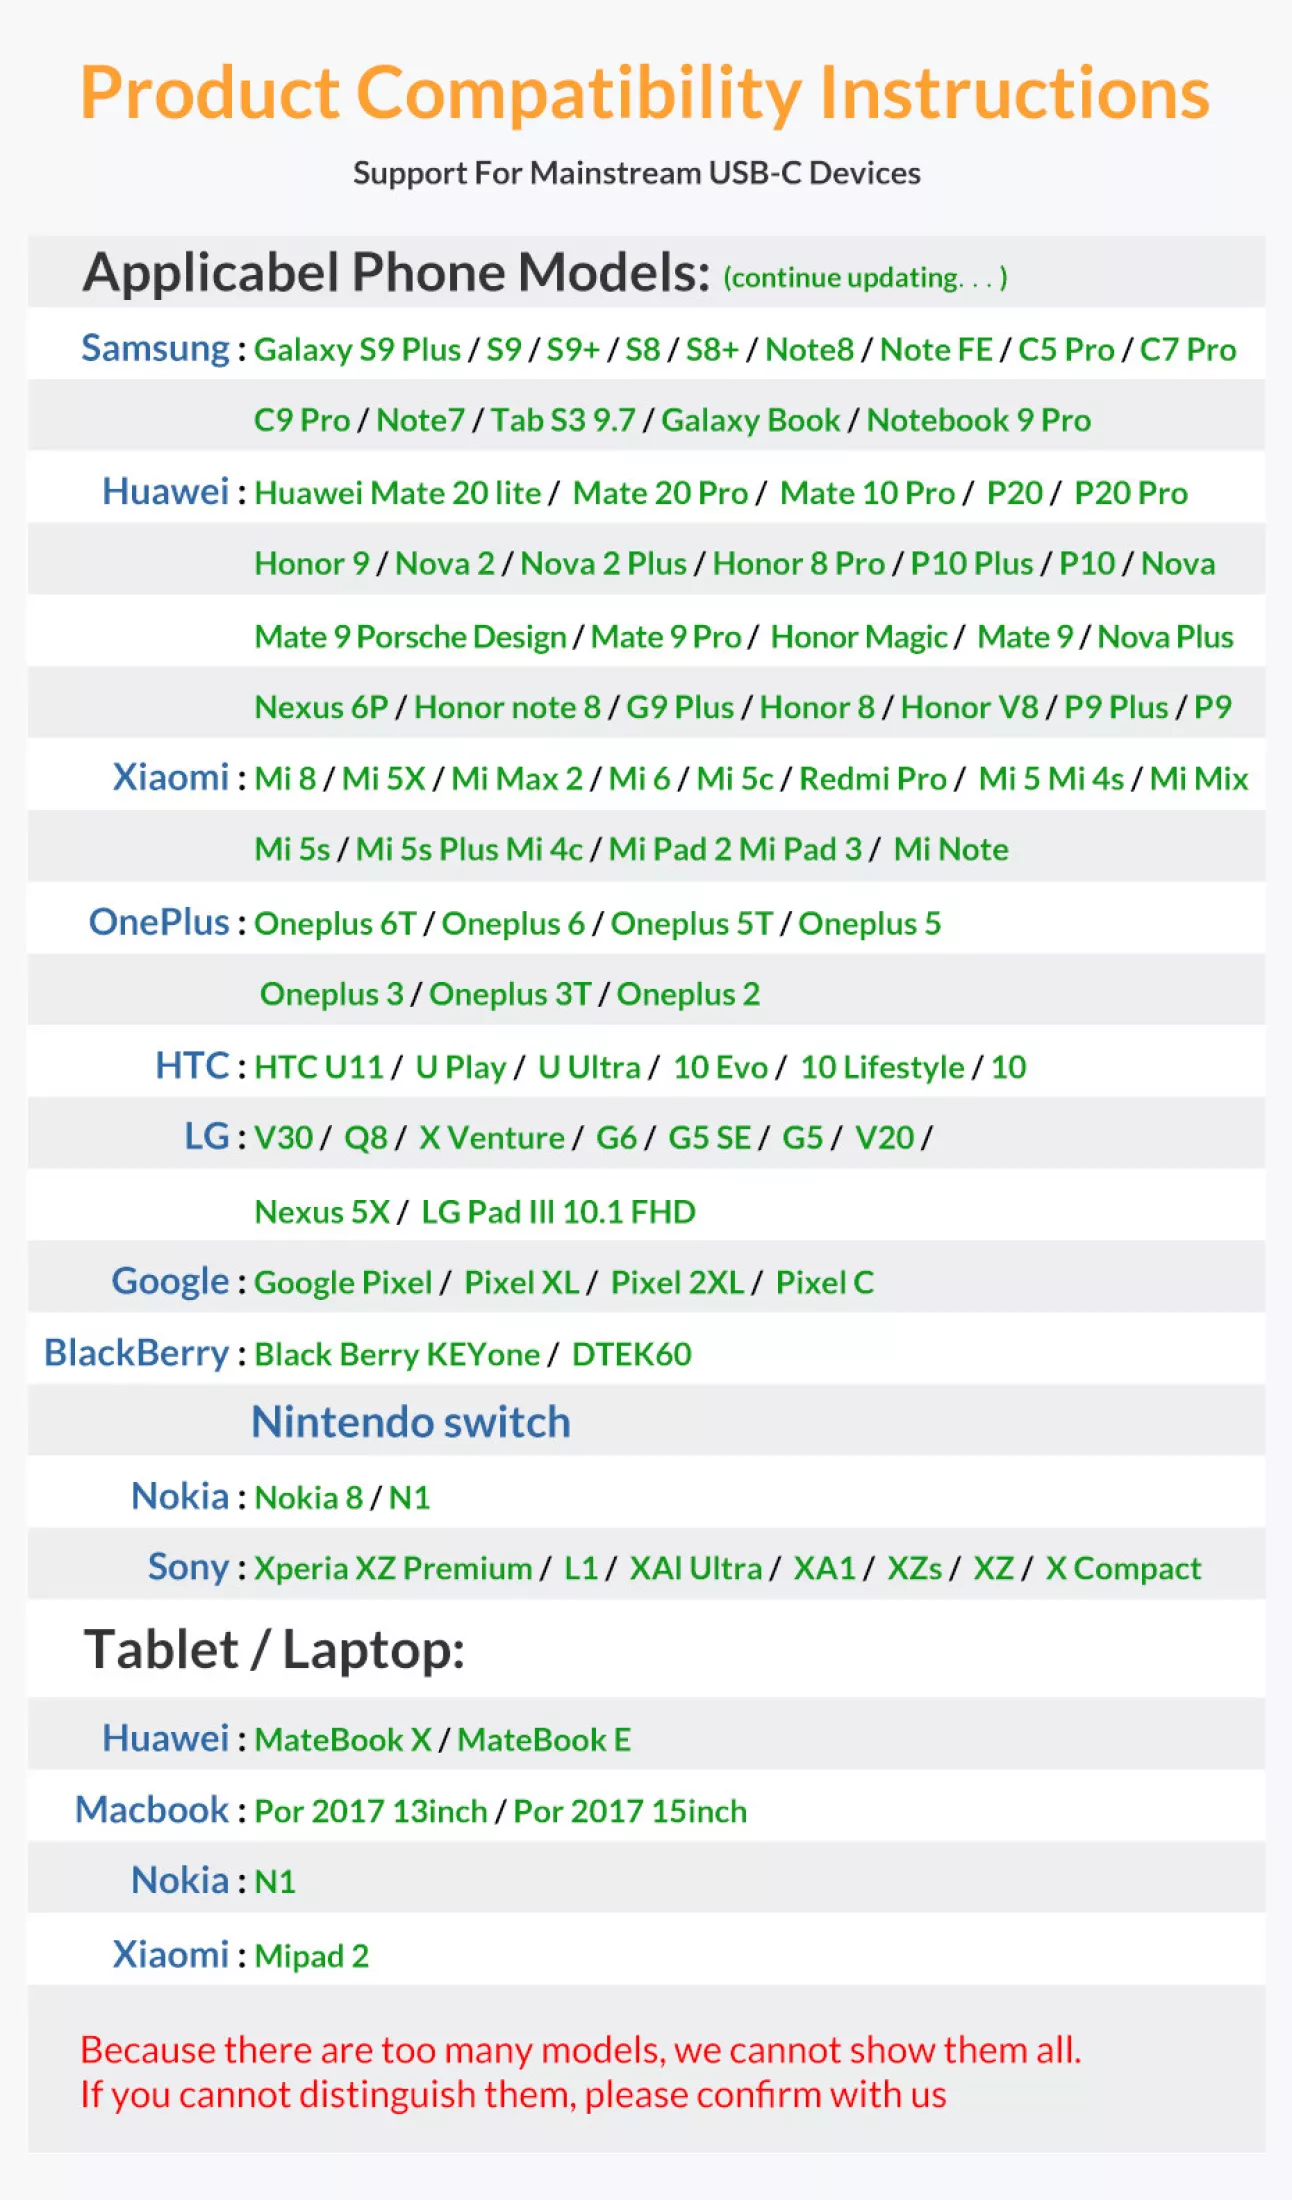 [HÀNG CHÍNH HÃNG] Cáp sạc nhanh TOPK AN09 USB-MICRO 2.4A- Đồng Bộ Dữ Liệu Cho Samsung Huawei Xiaomi LG Android Micro USB - Phân phối bởi TOPK VIỆT NAM